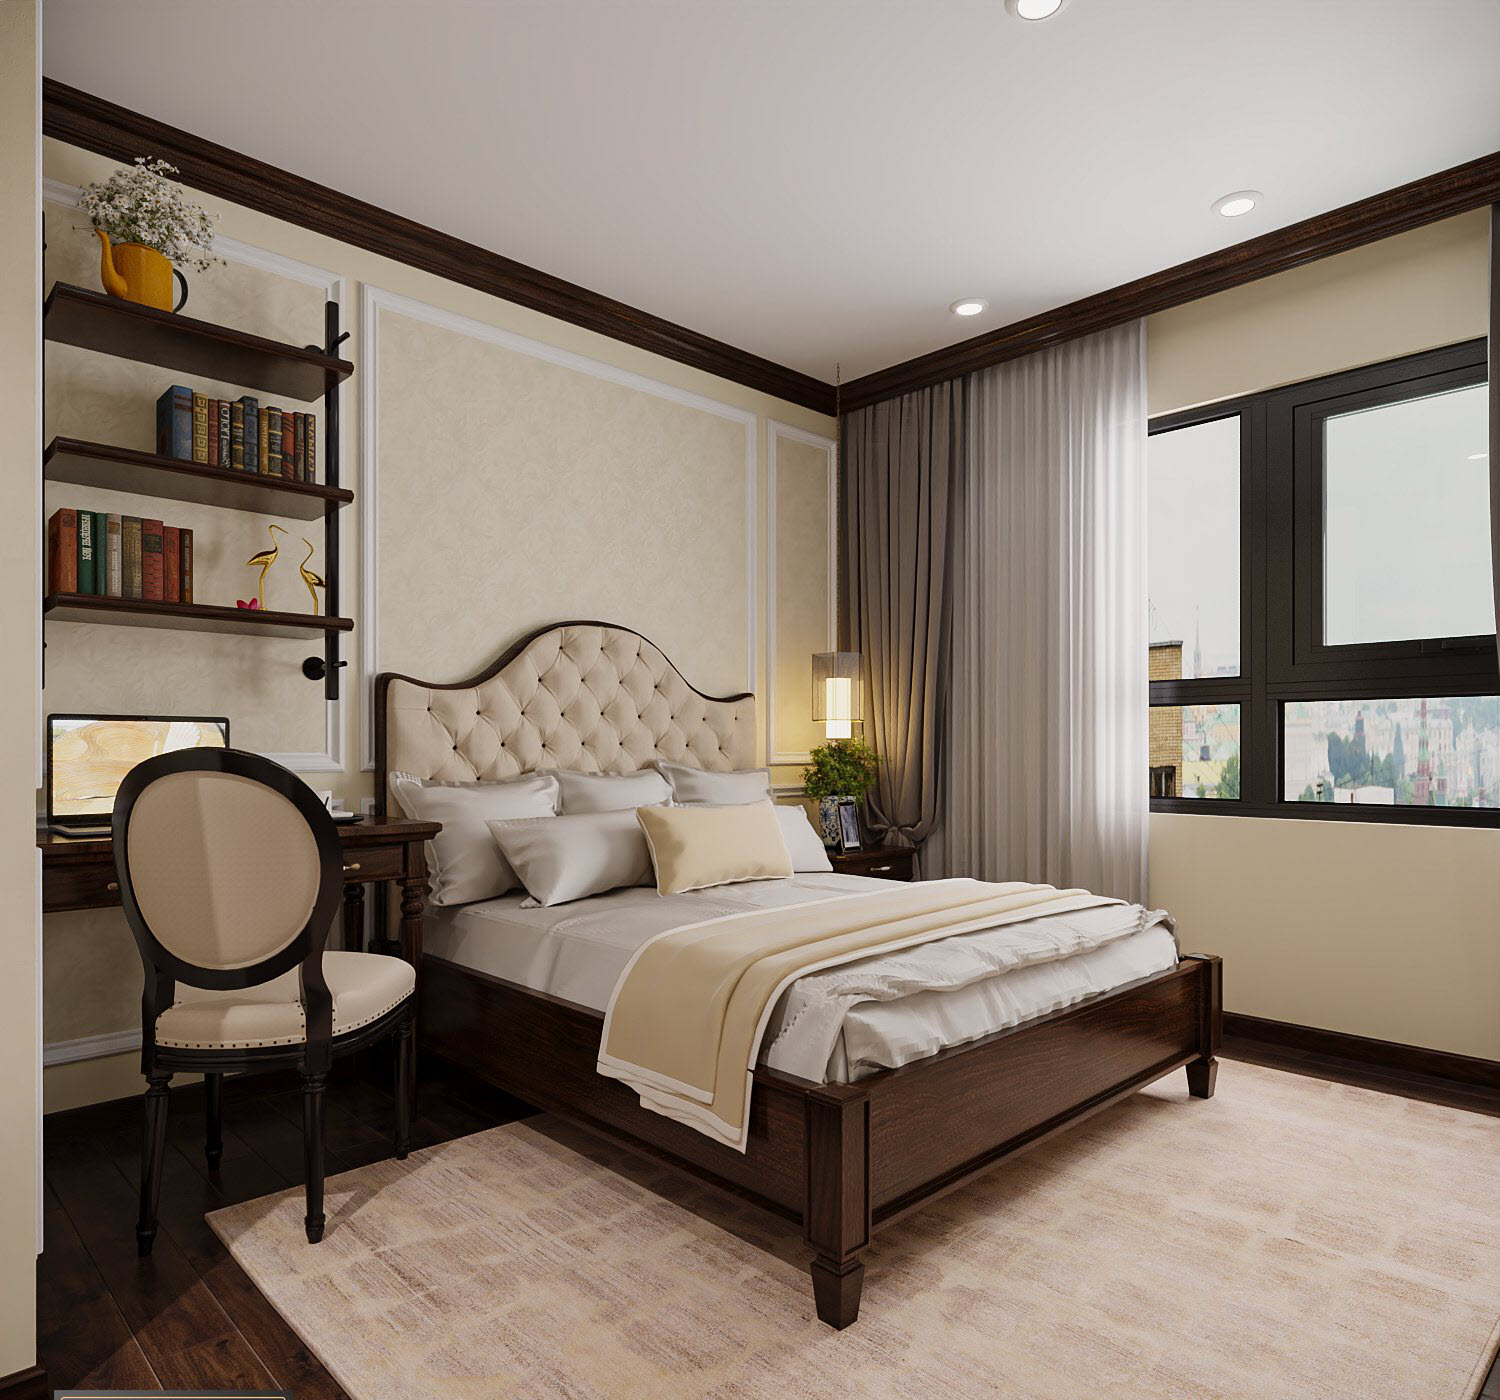 toàn cảnh phòng ngủ căn hộ 85m2 với giường nệm, giá sách treo tường, cửa sổ kính.